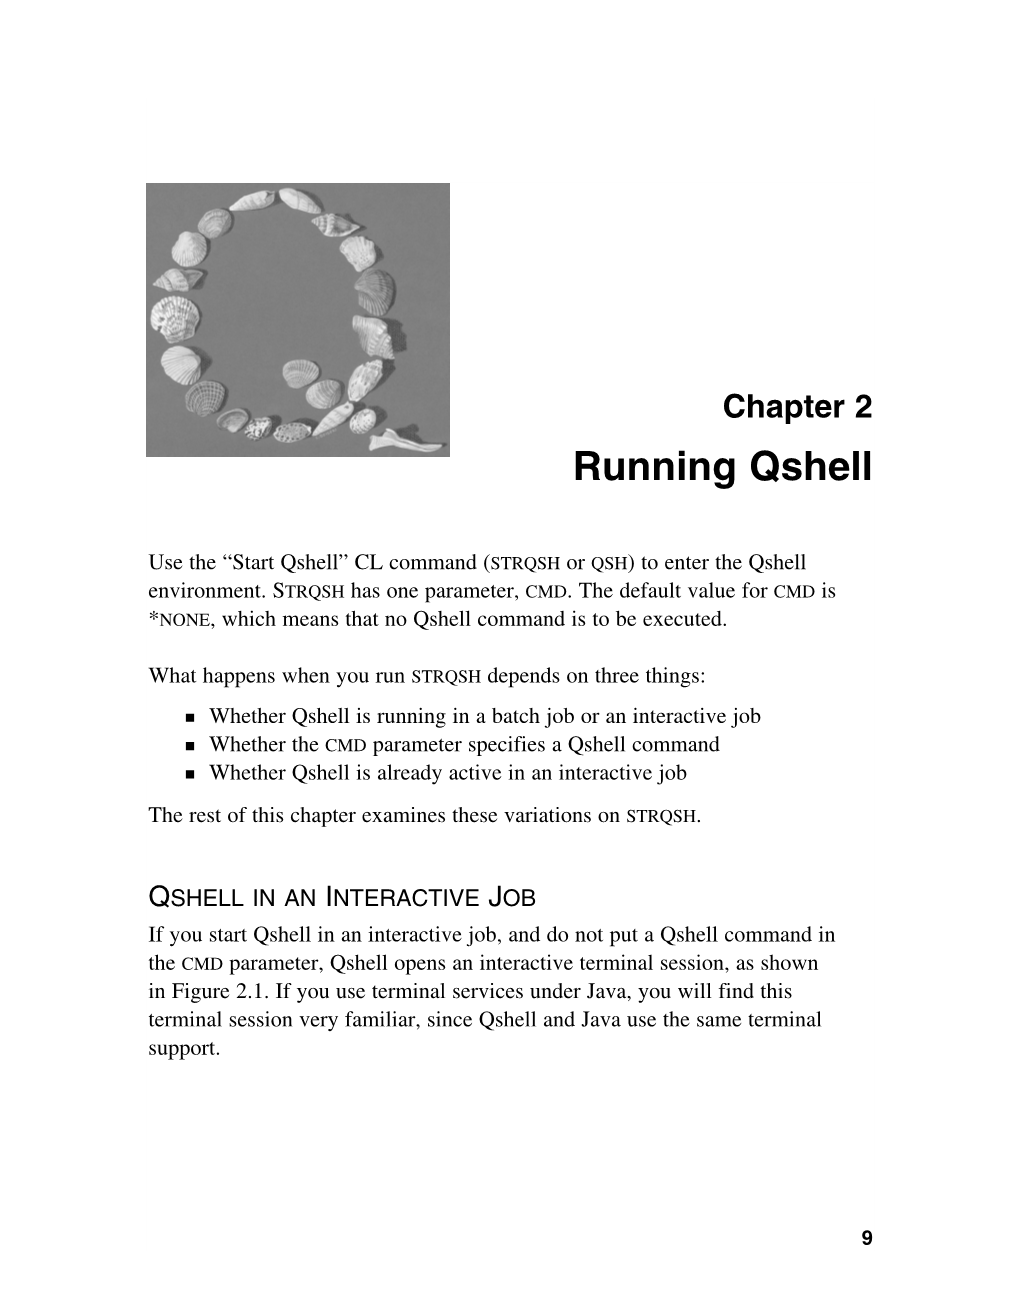 Running Qshell